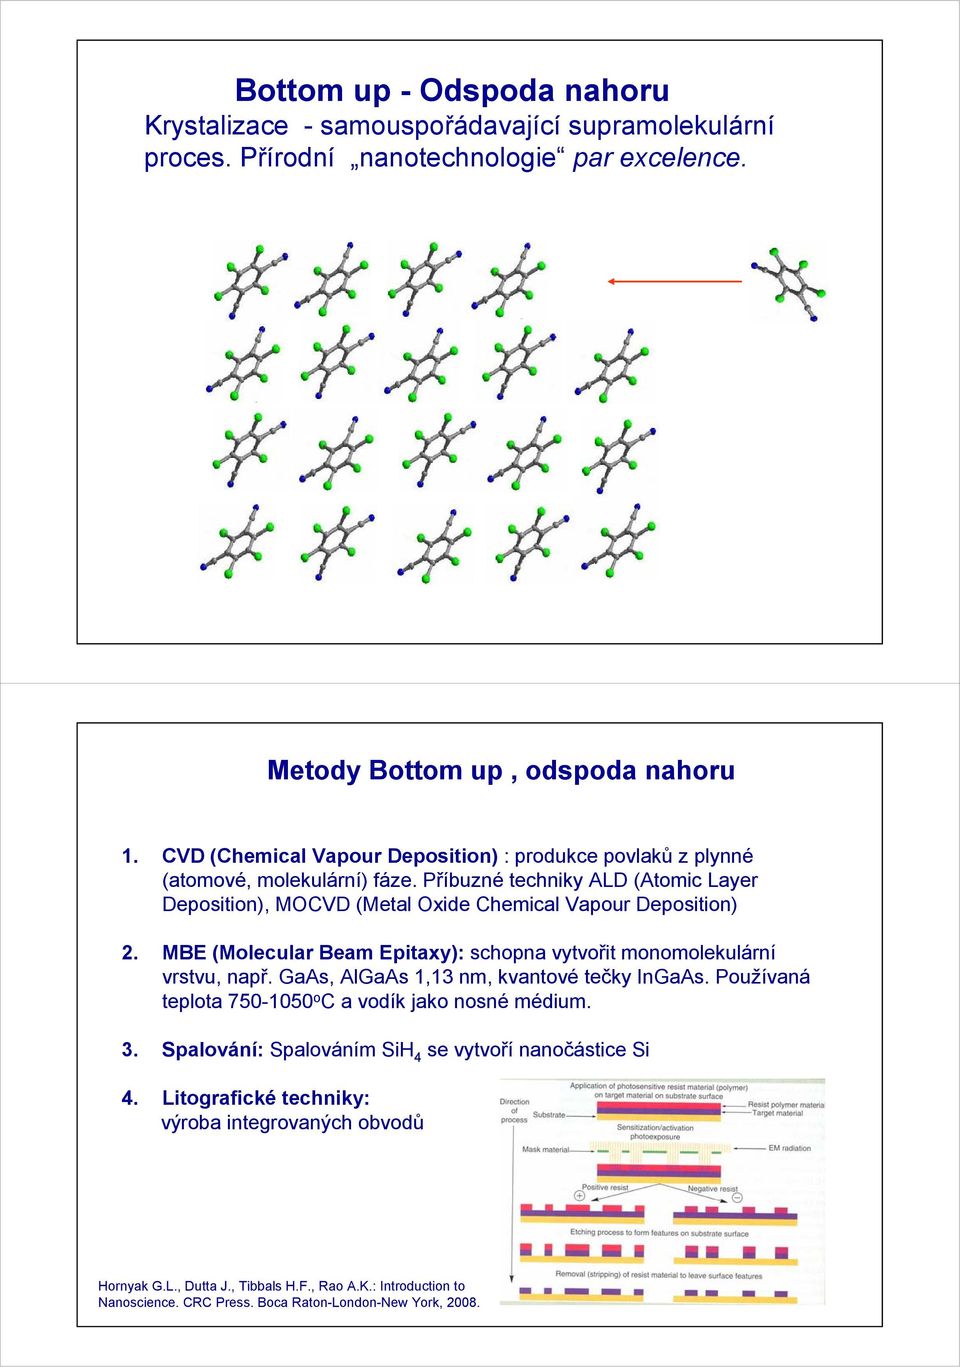 MBE (Molecular Beam Epitaxy): schopna vytvořit monomolekulární vrstvu, např. GaAs, AlGaAs 1,13 nm, kvantové tečky InGaAs. Používaná teplota 750-1050 o C a vodík jako nosné médium. 3.